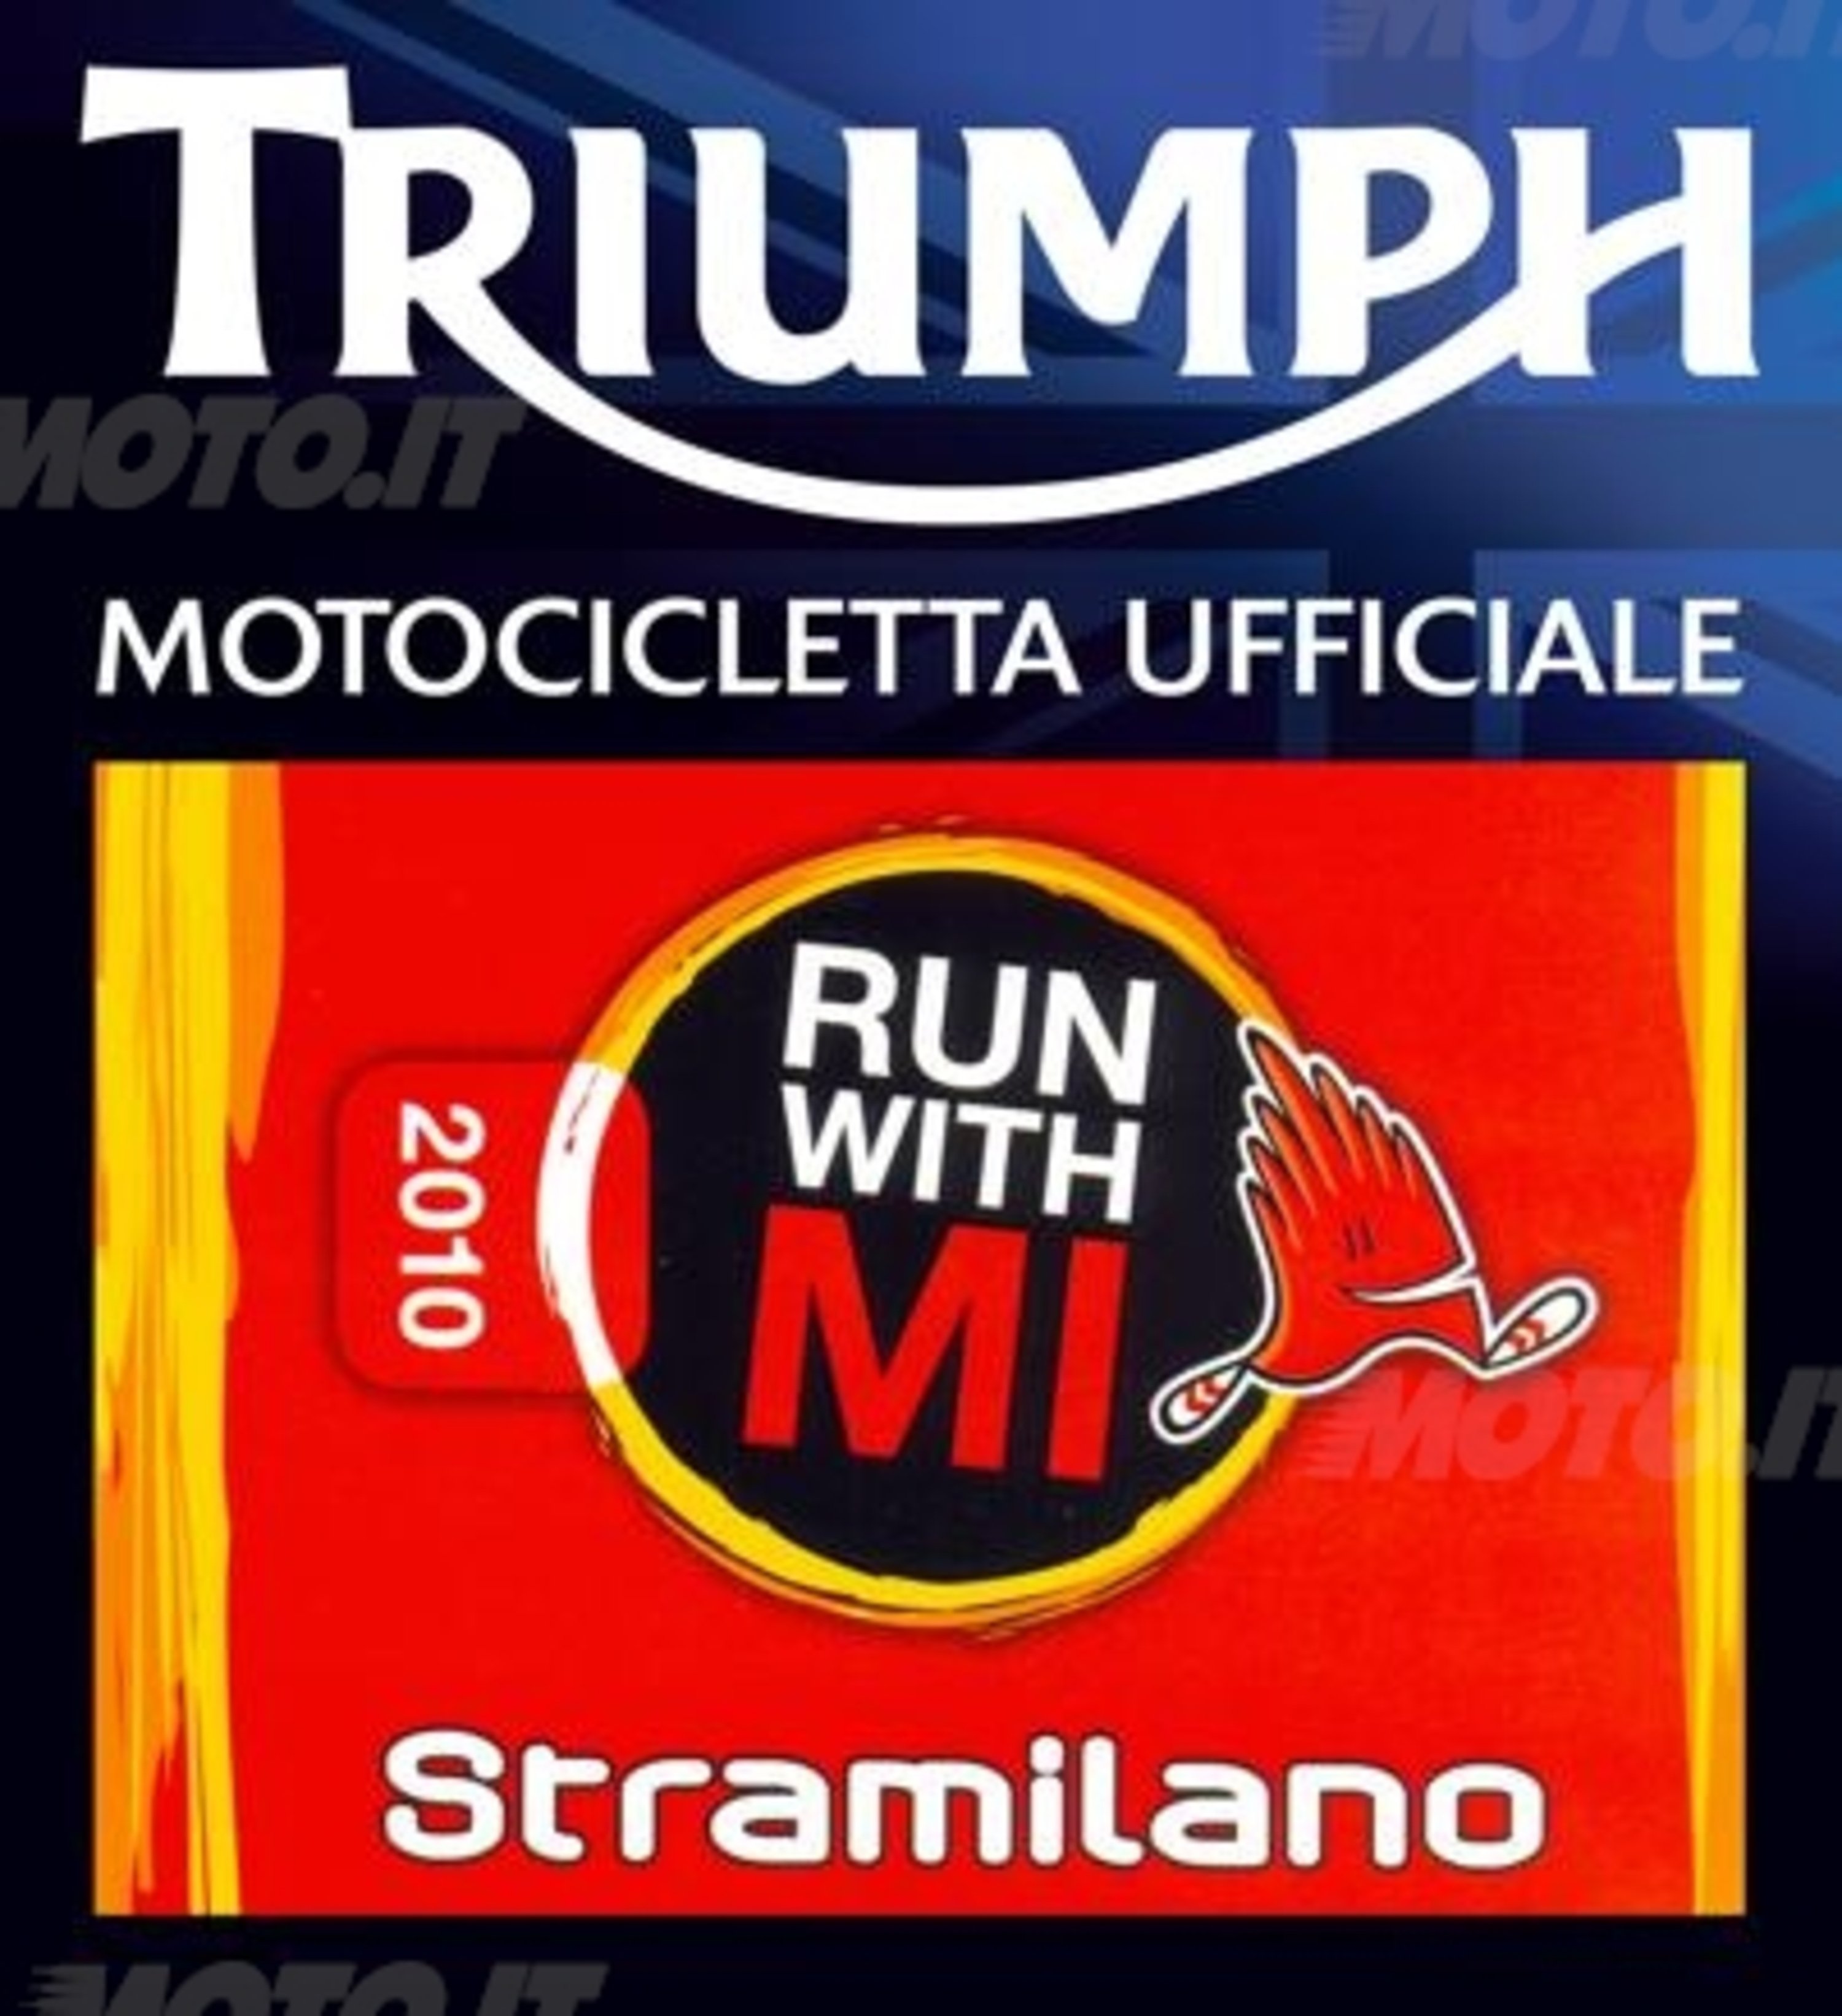 Triumph motocicletta ufficiale della Stramilano 2010